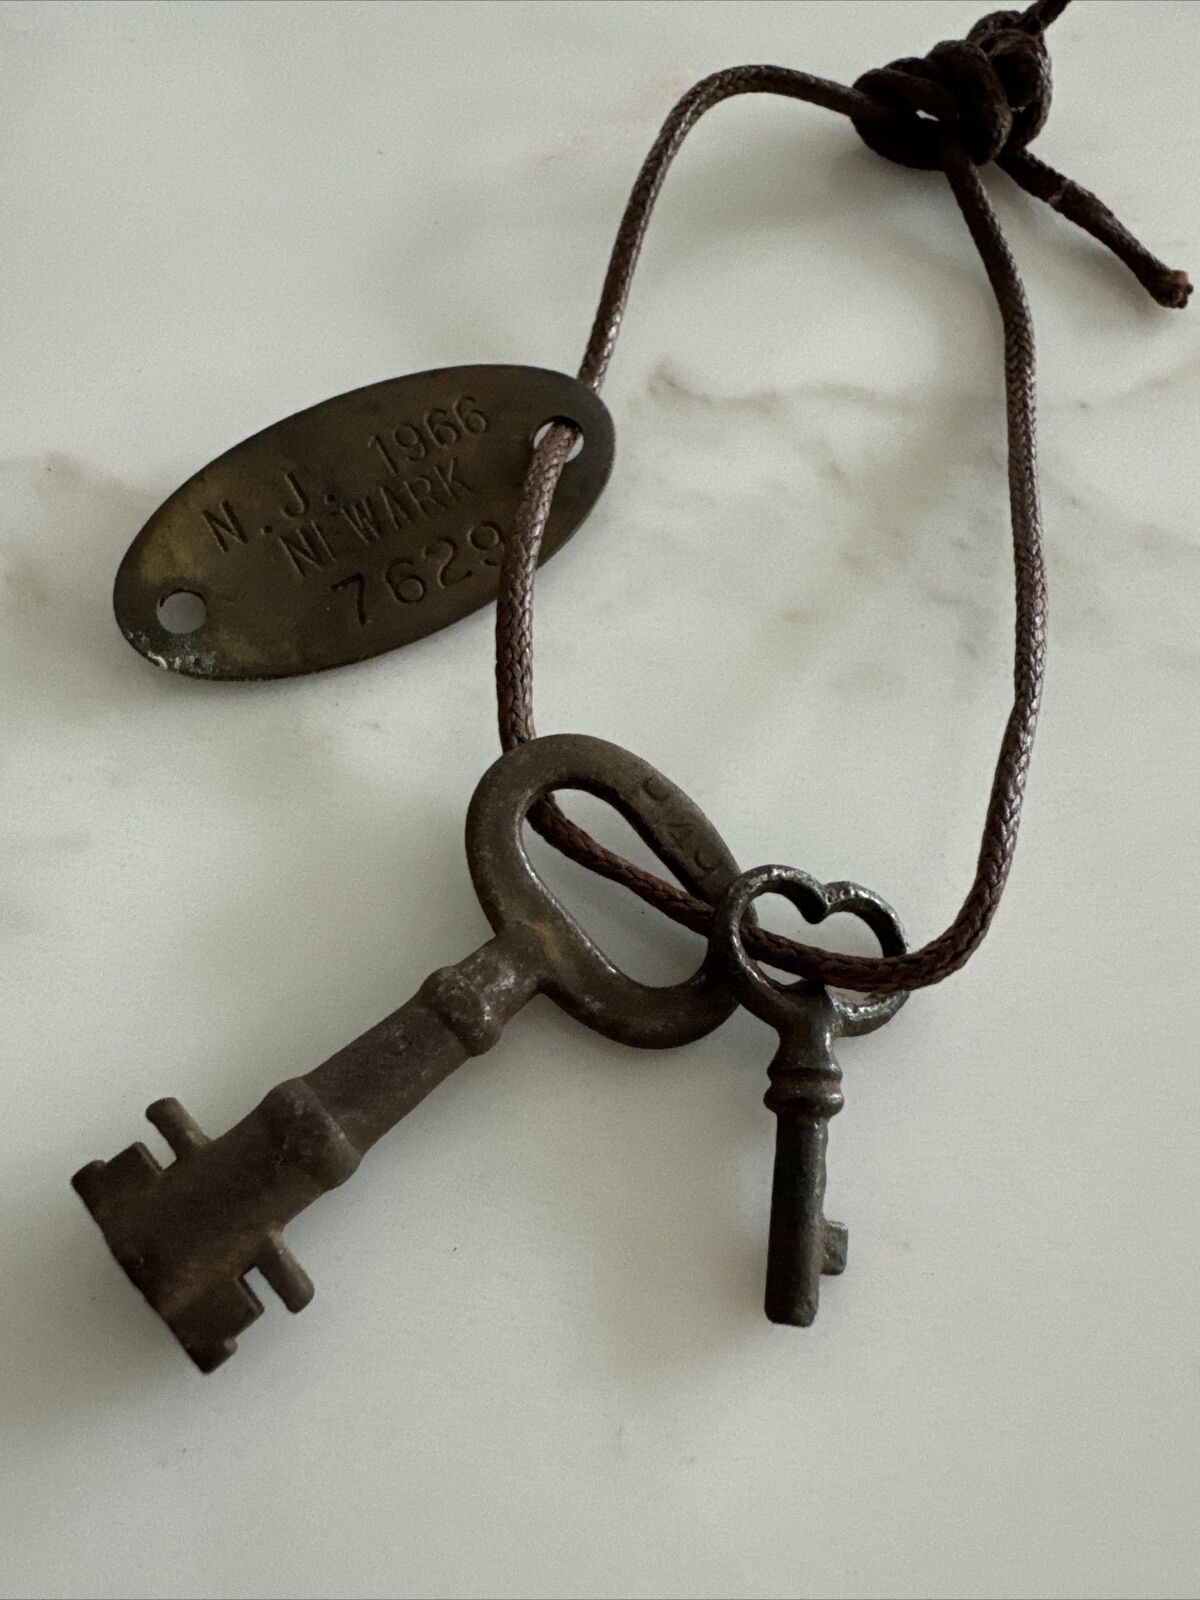 Small Skeleton Keys & 1966 Newark NJ ID Tag - Safe Deposit Box ?